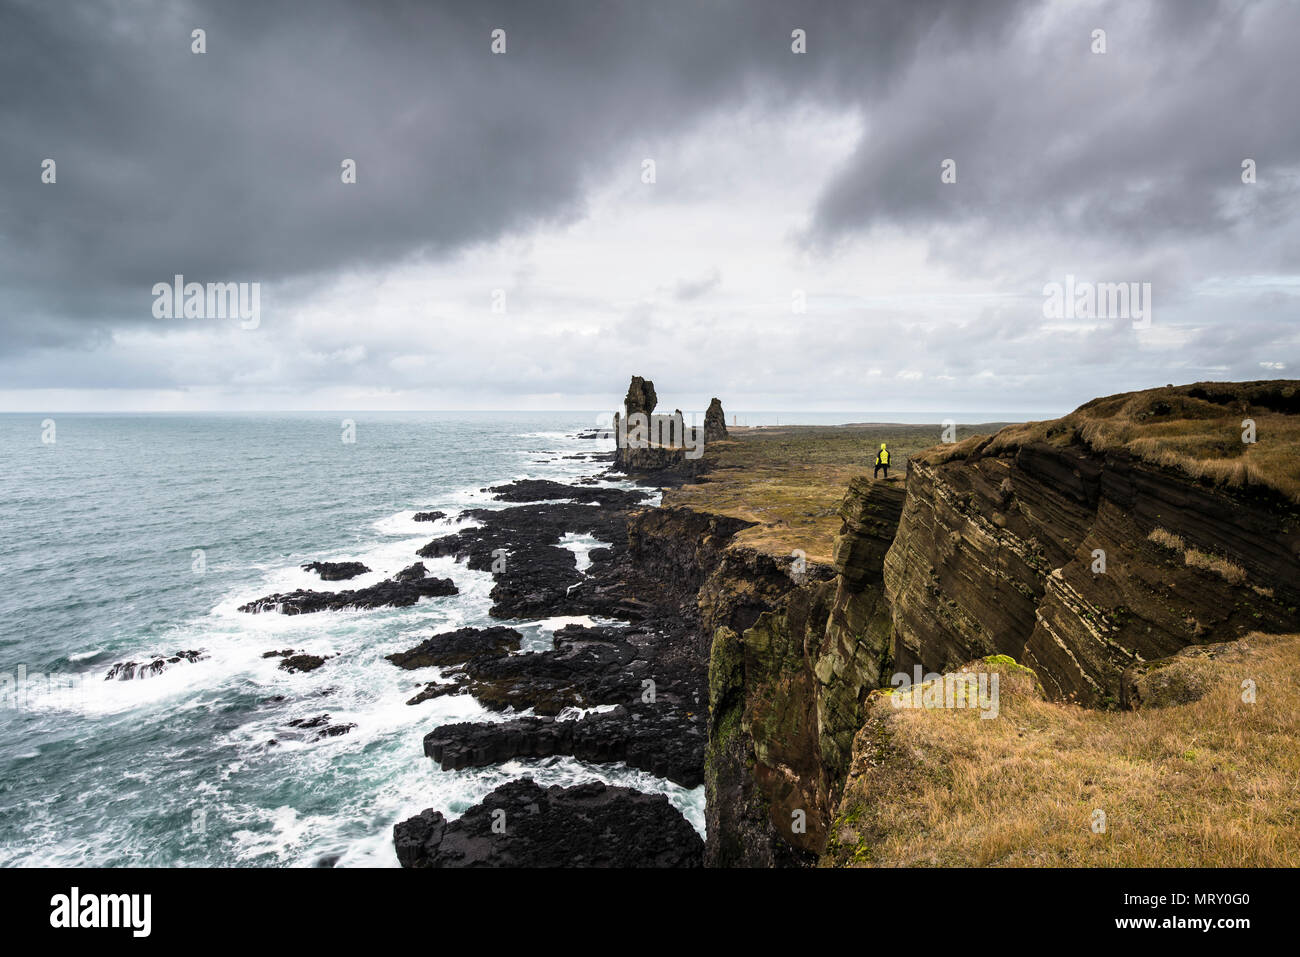 Péninsule de snæfellsnes, dans l'ouest de l'Islande, Islande. Londrangar pile la mer et falaises côtières. Un homme est debout sur la falaise Banque D'Images